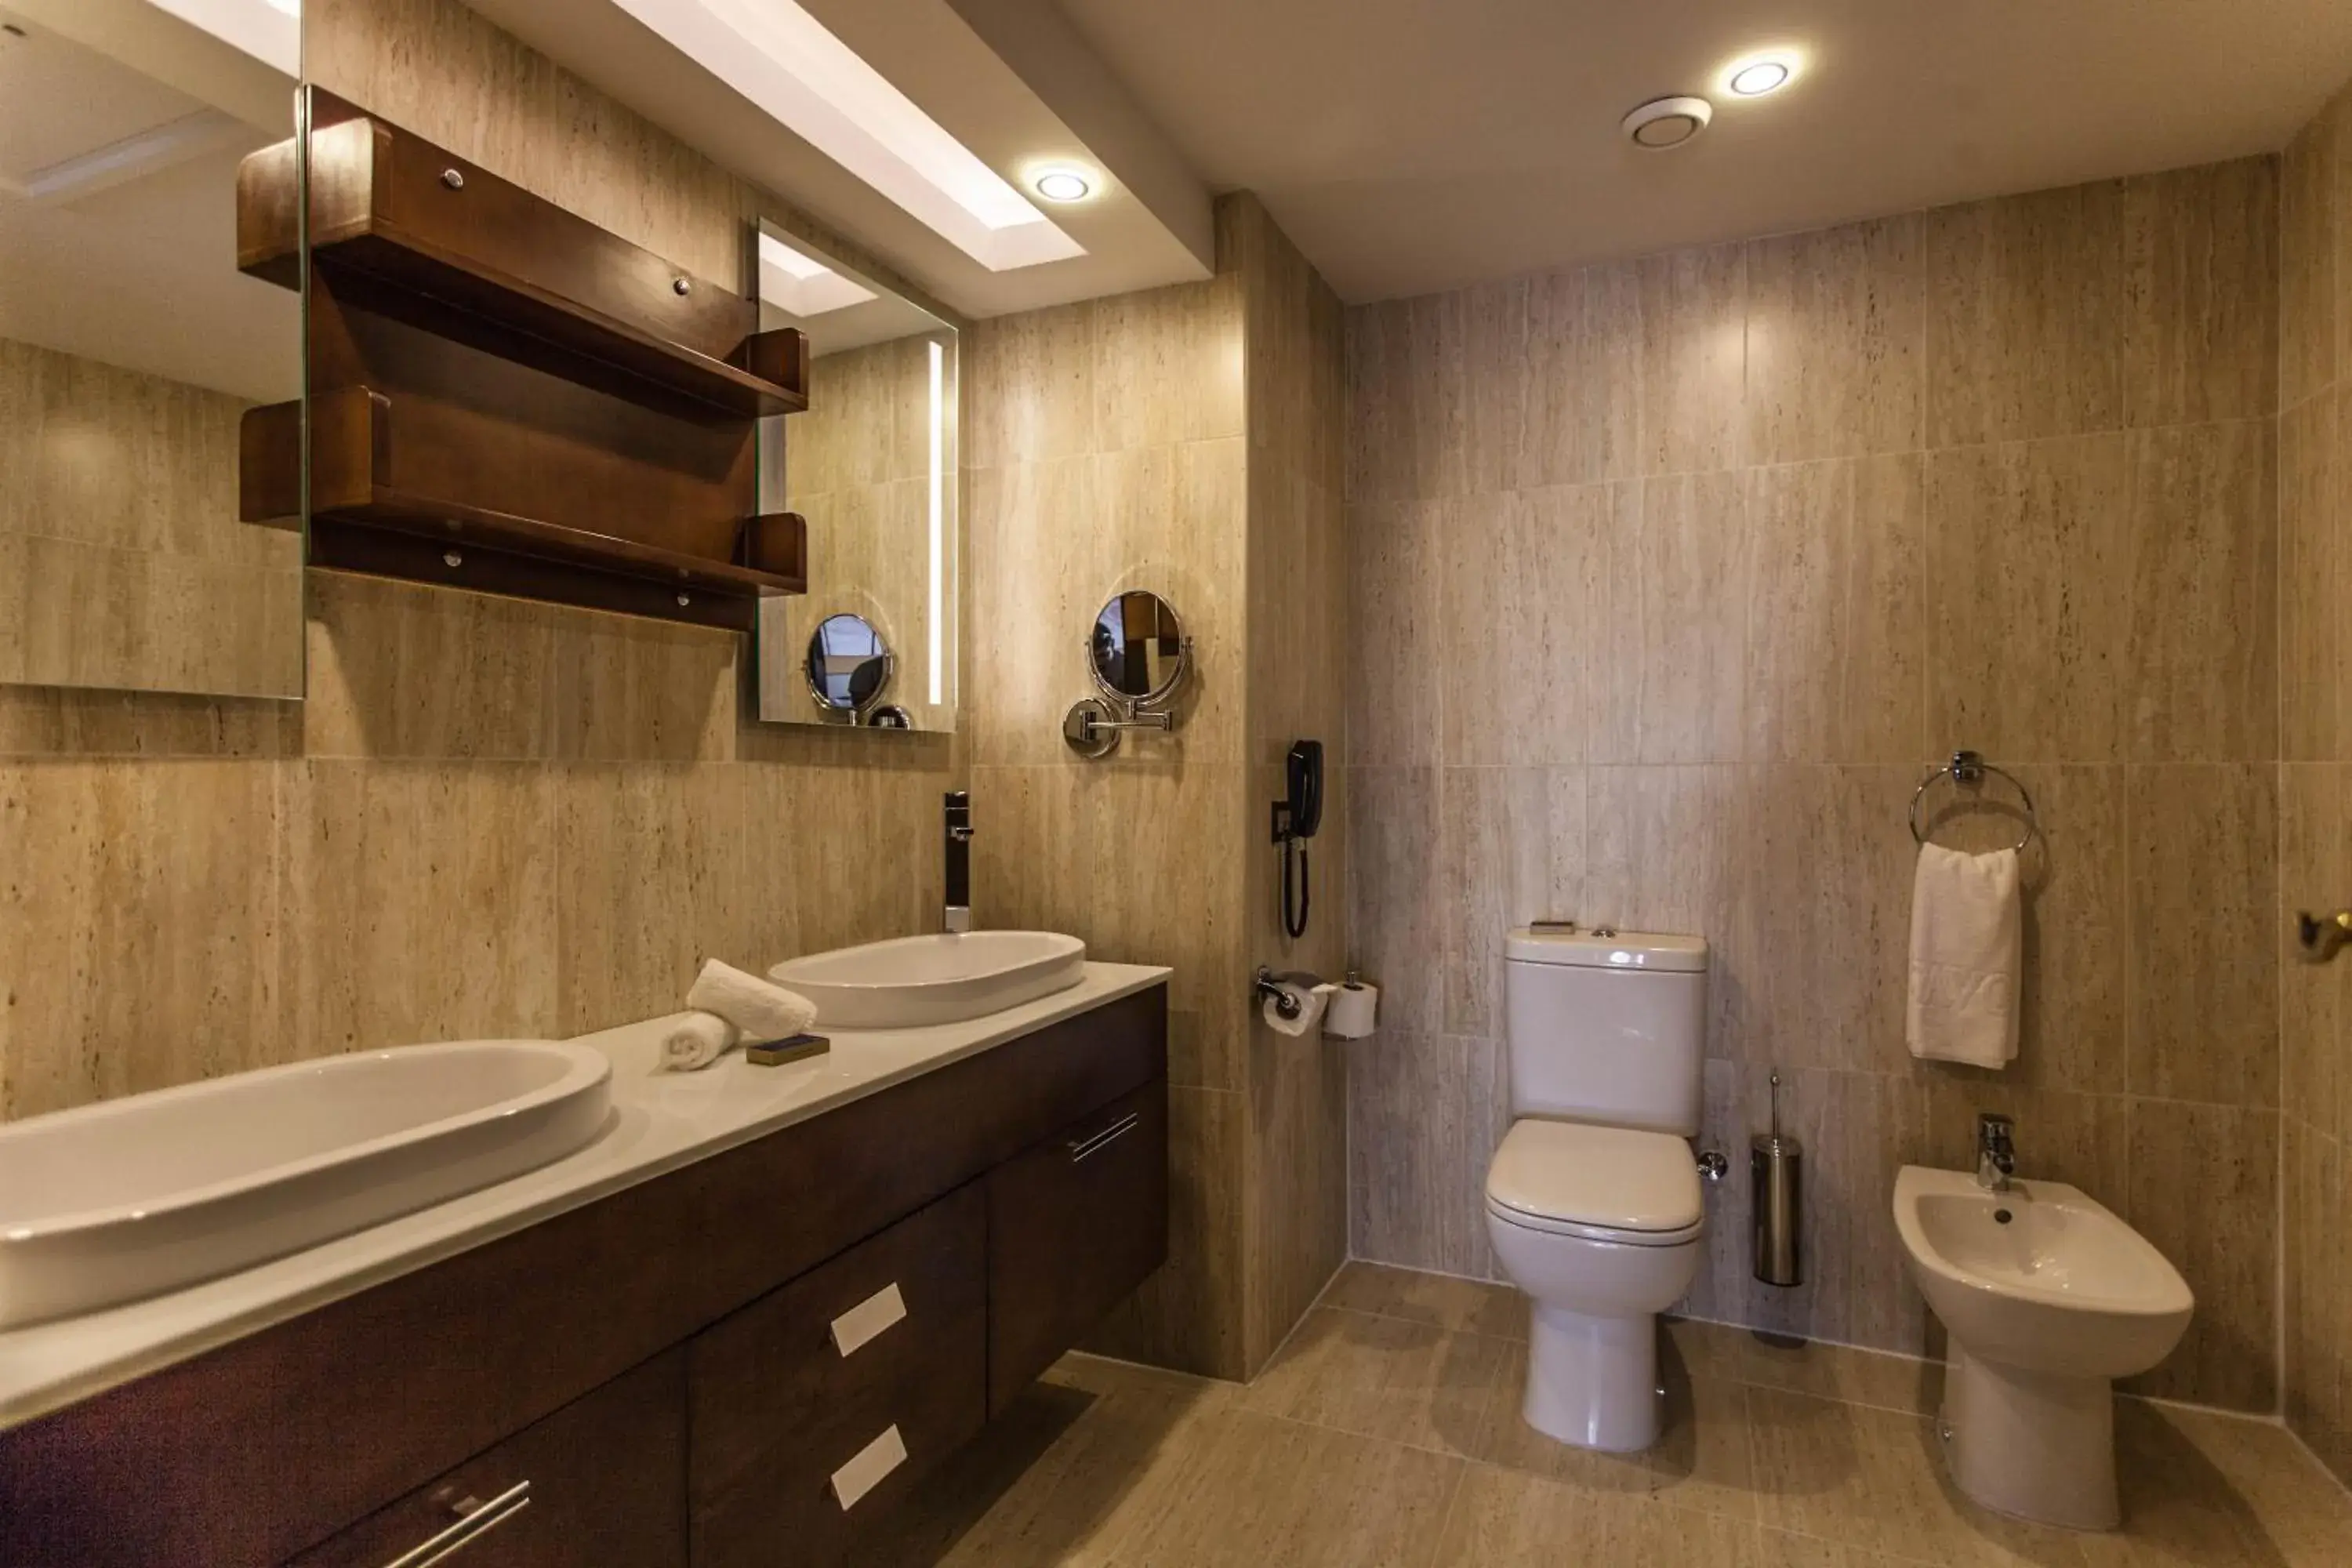 Toilet, Bathroom in Savoy Le Grand Hotel Marrakech